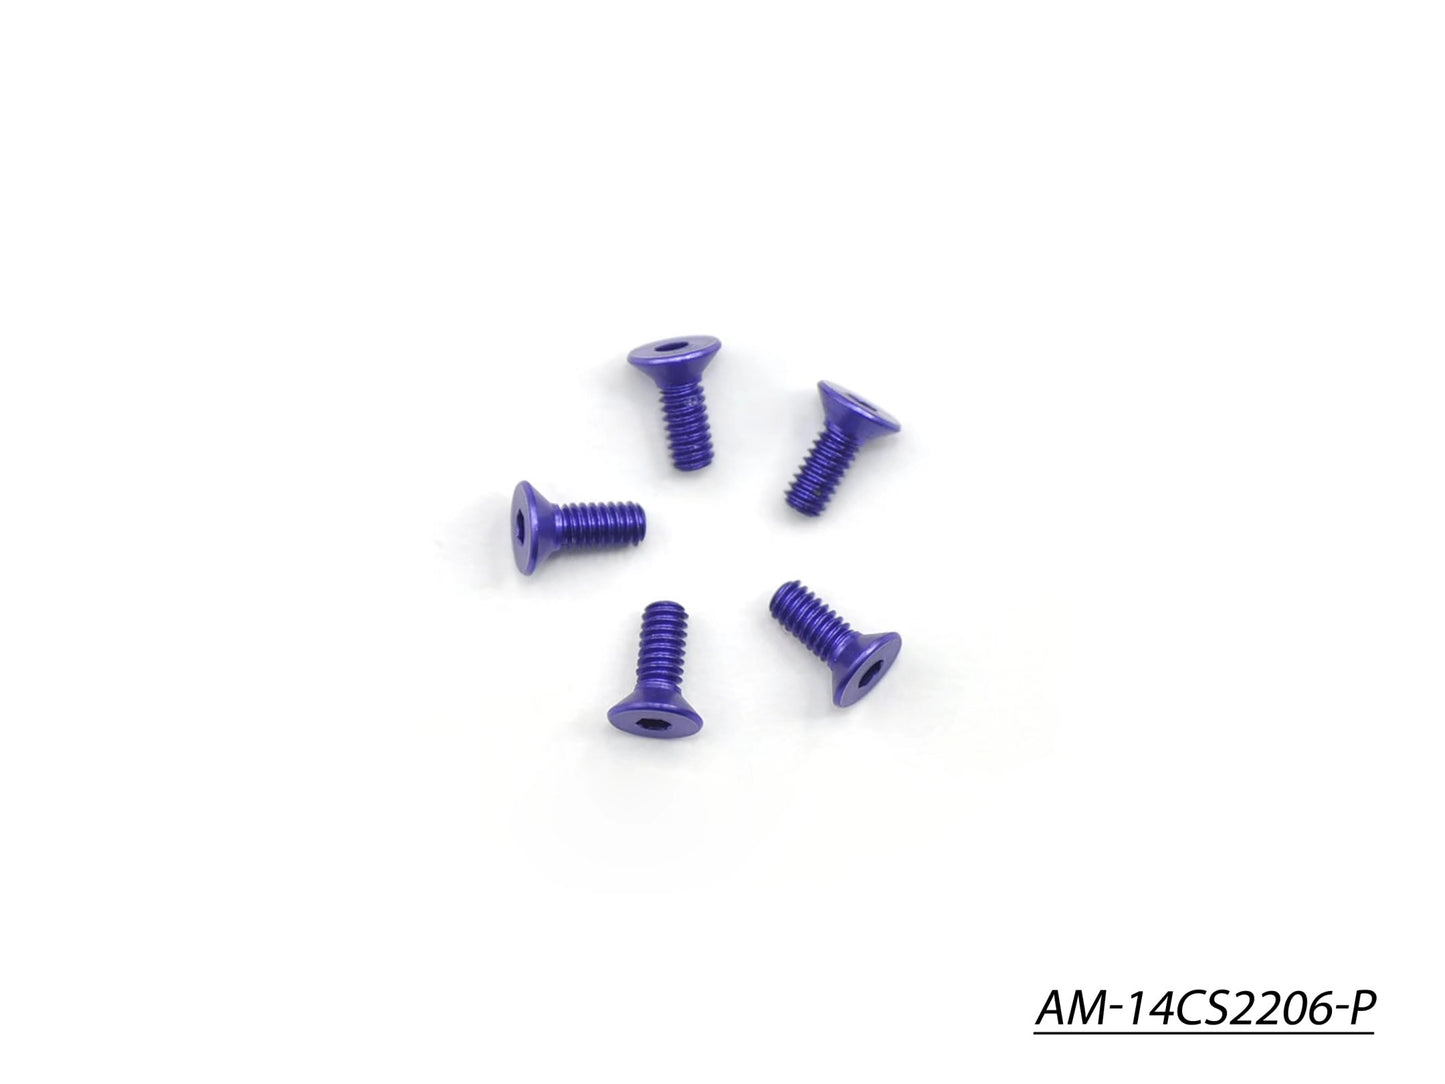 Alu Screw Allen Countersunk M2.2X6 Purple (7075) (5) (AM-14CS2206-P)